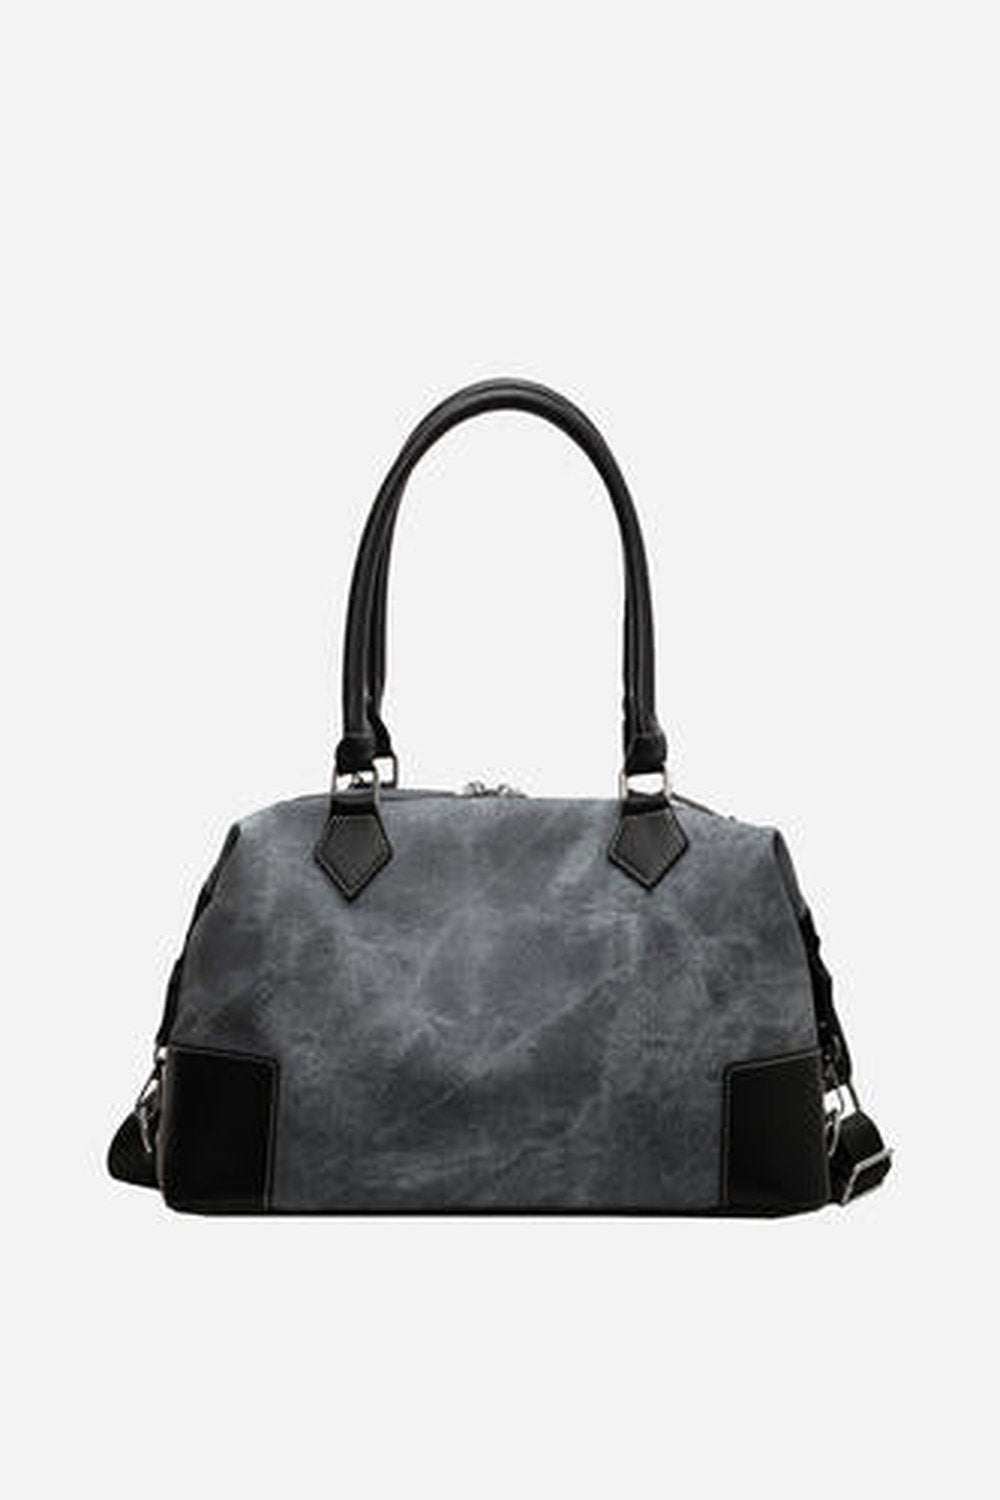 Contrast PU Leather Shoulder Bag - Handbag - FITGGINS